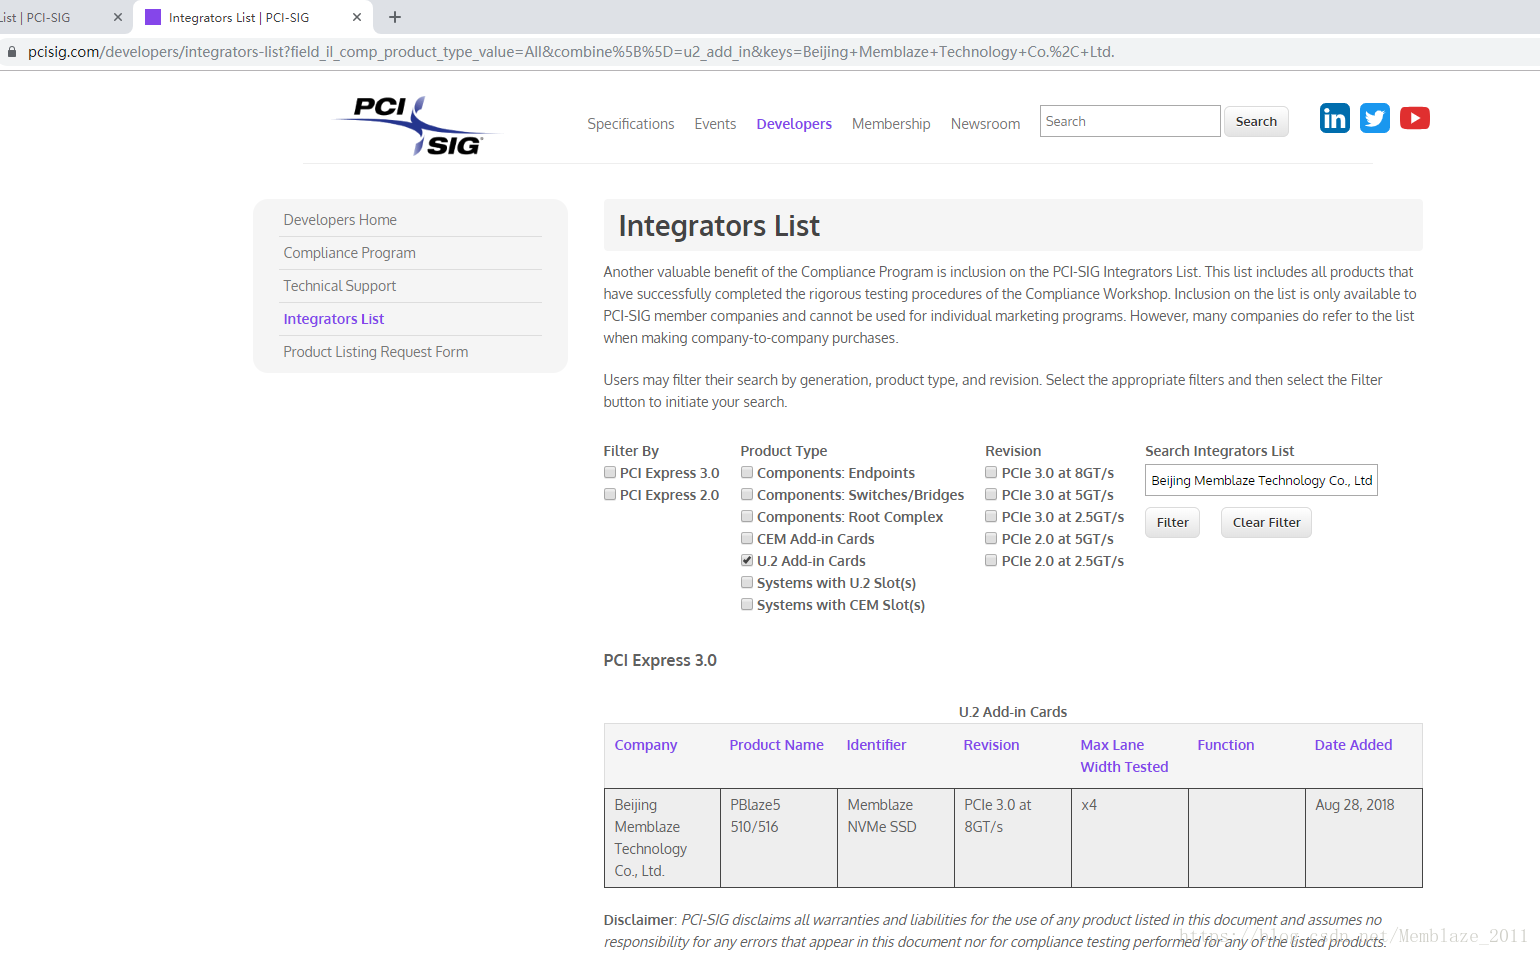 PCI-SIG Integrators List